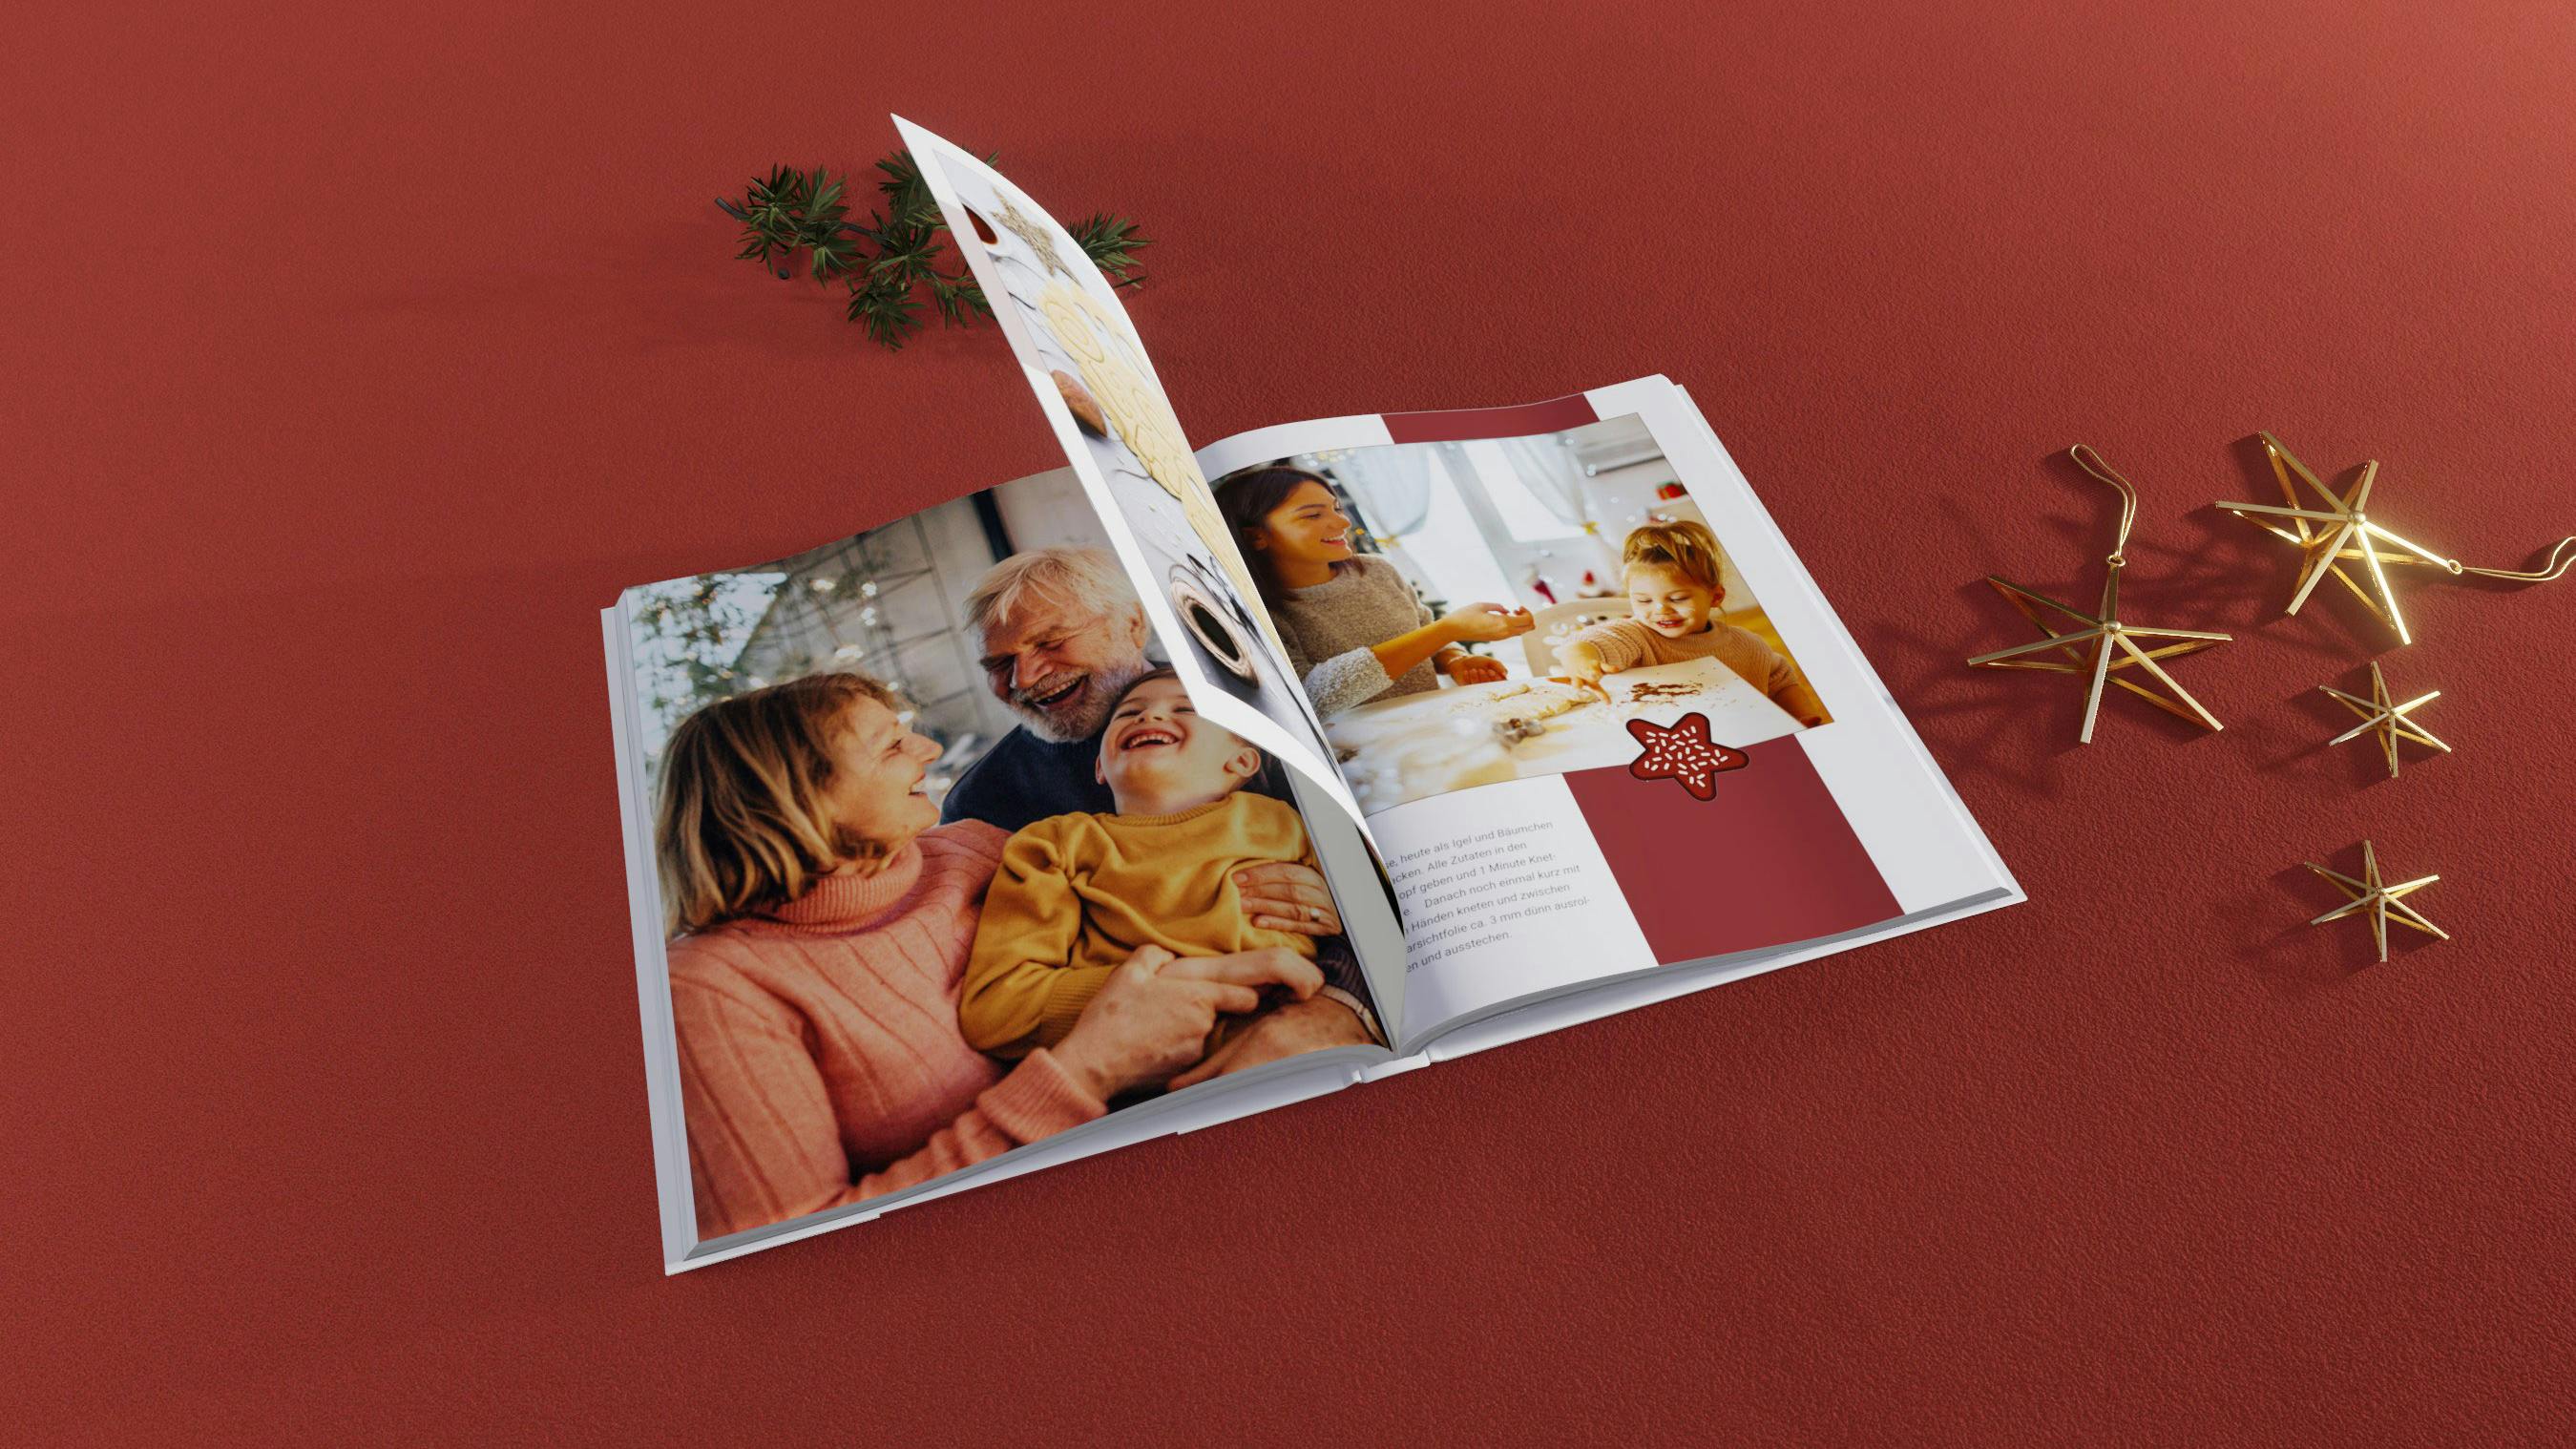 Fotobuch im Hochformat mit Backrezepten und Familienfotos auf rotem Untergrund